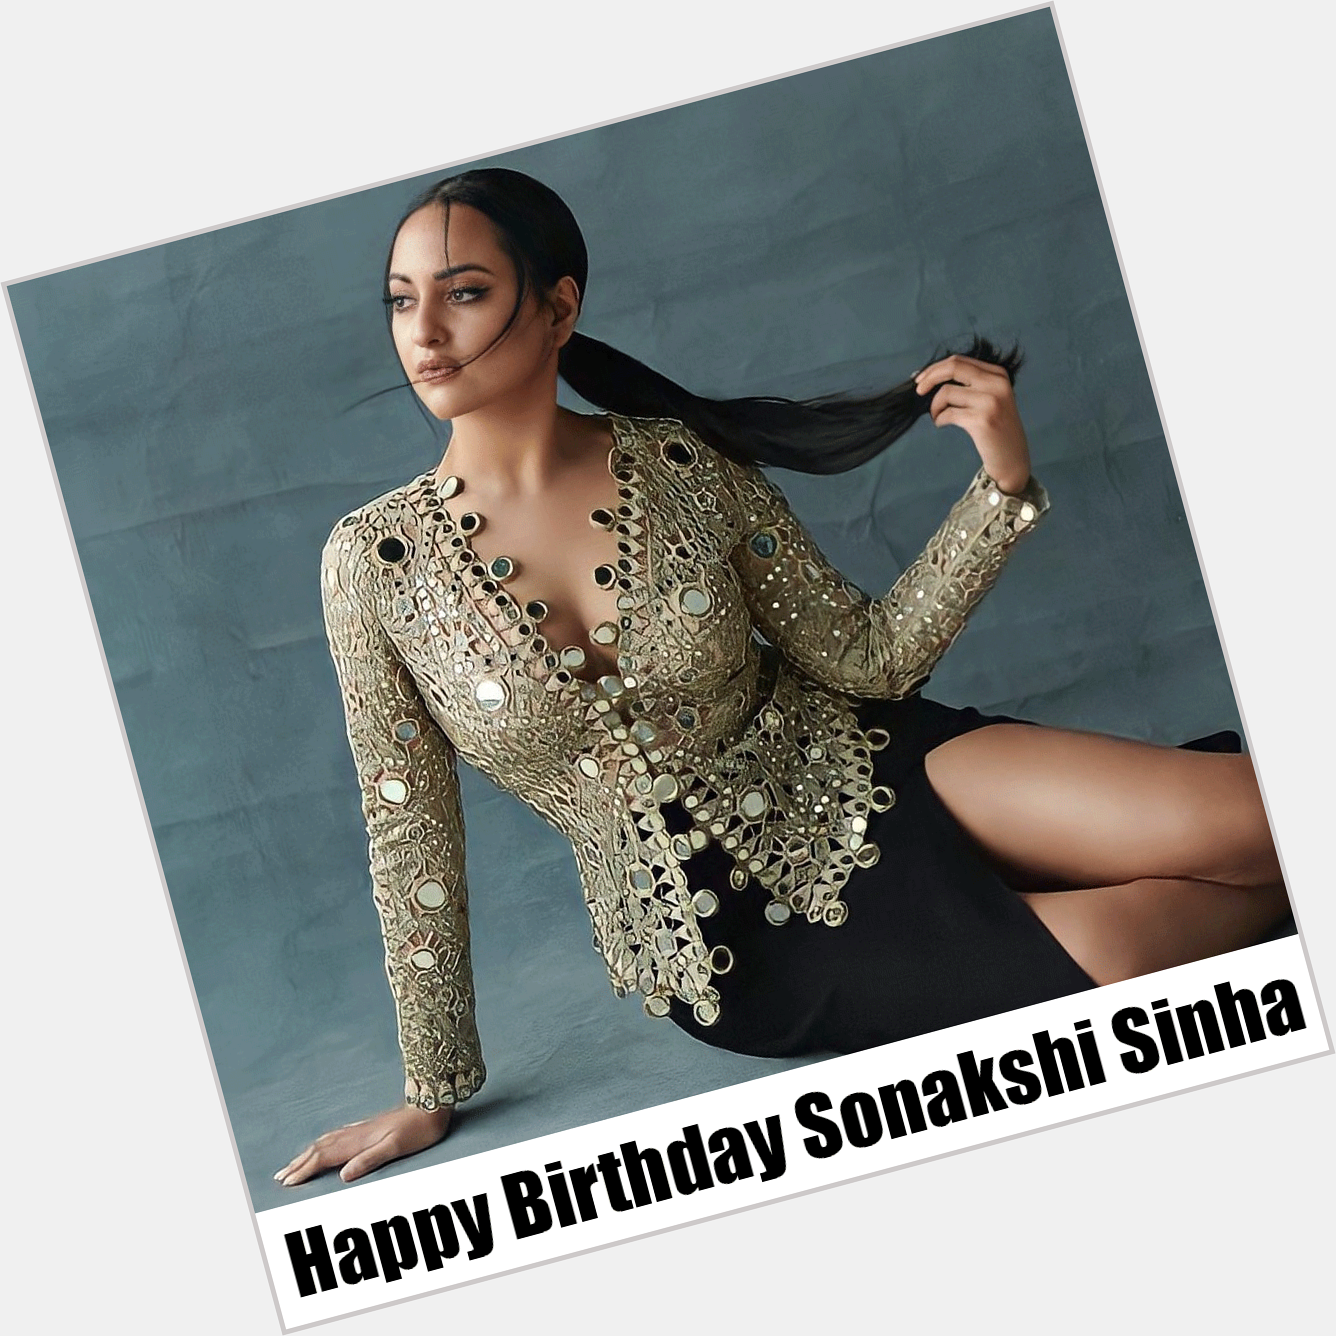 Happy Birthday Sonakshi Sinha
. 